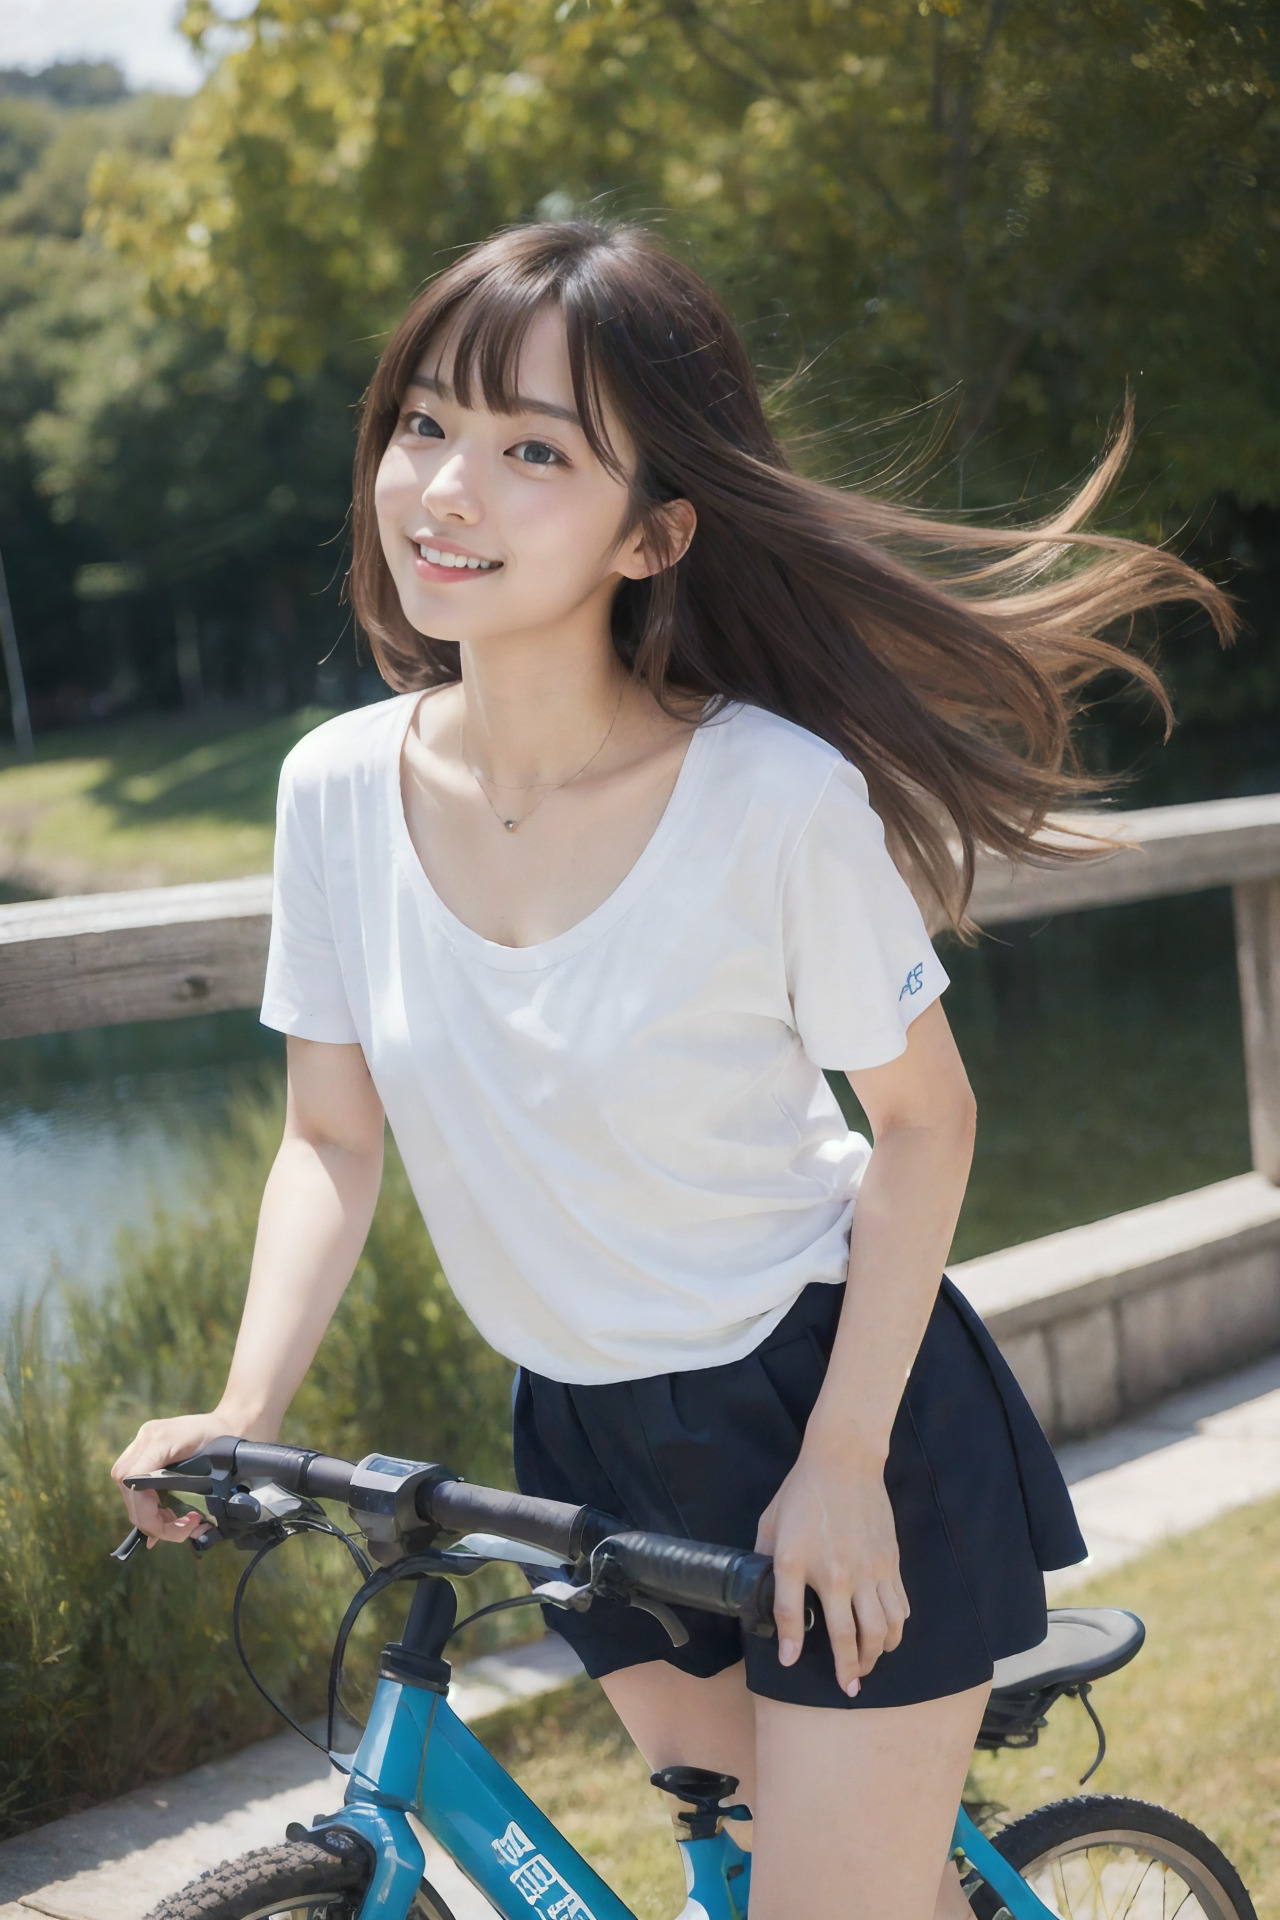 自転車に乗る笑顔の女性